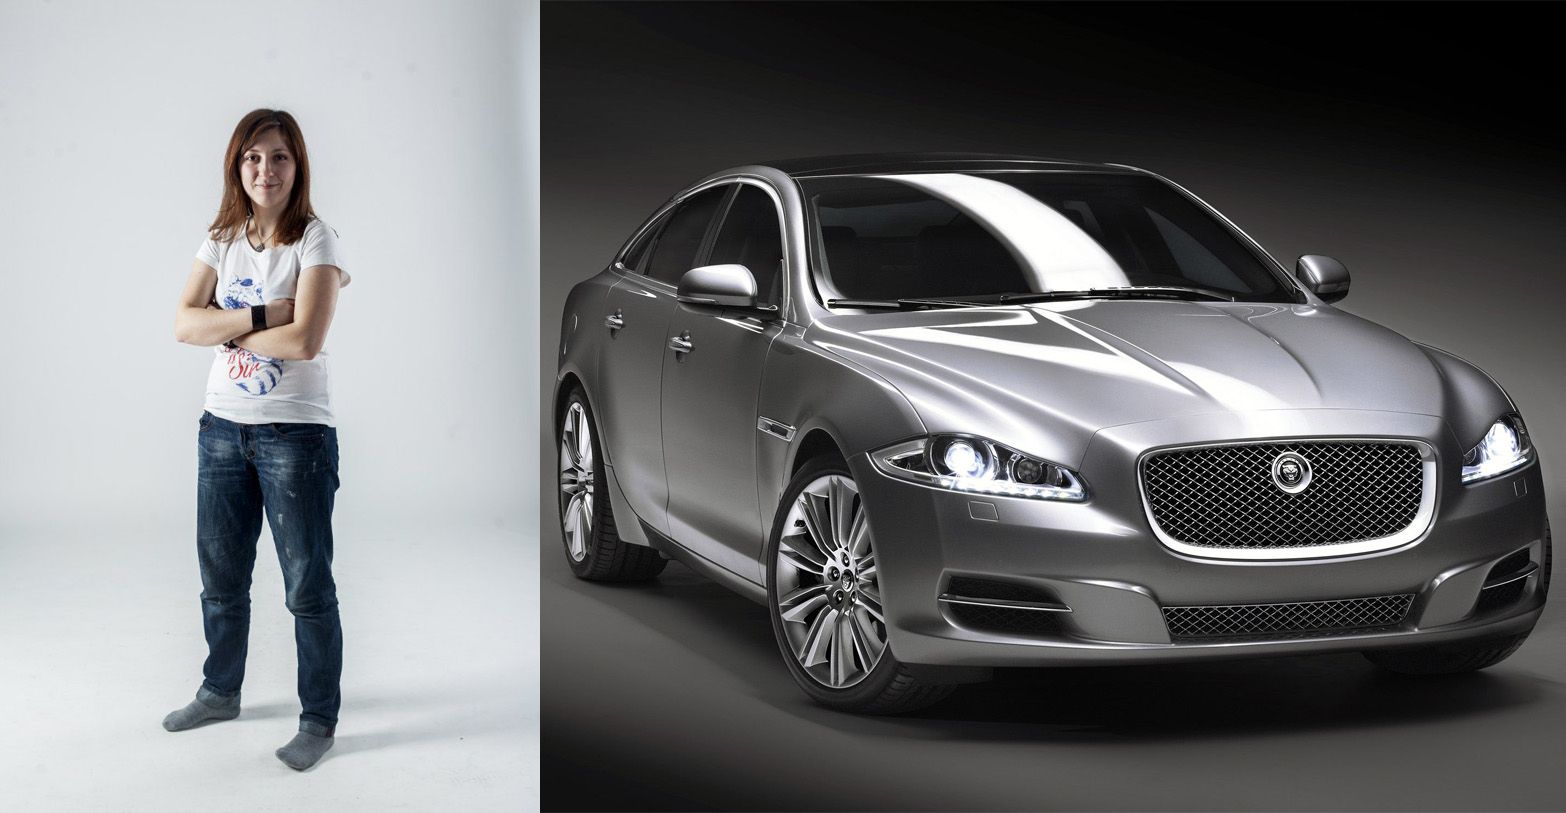 Jaguar - роскошный автомобиль для людей с особенным чувством прекрасного, сочетающий презентабельность с отличными техническими характеристиками.